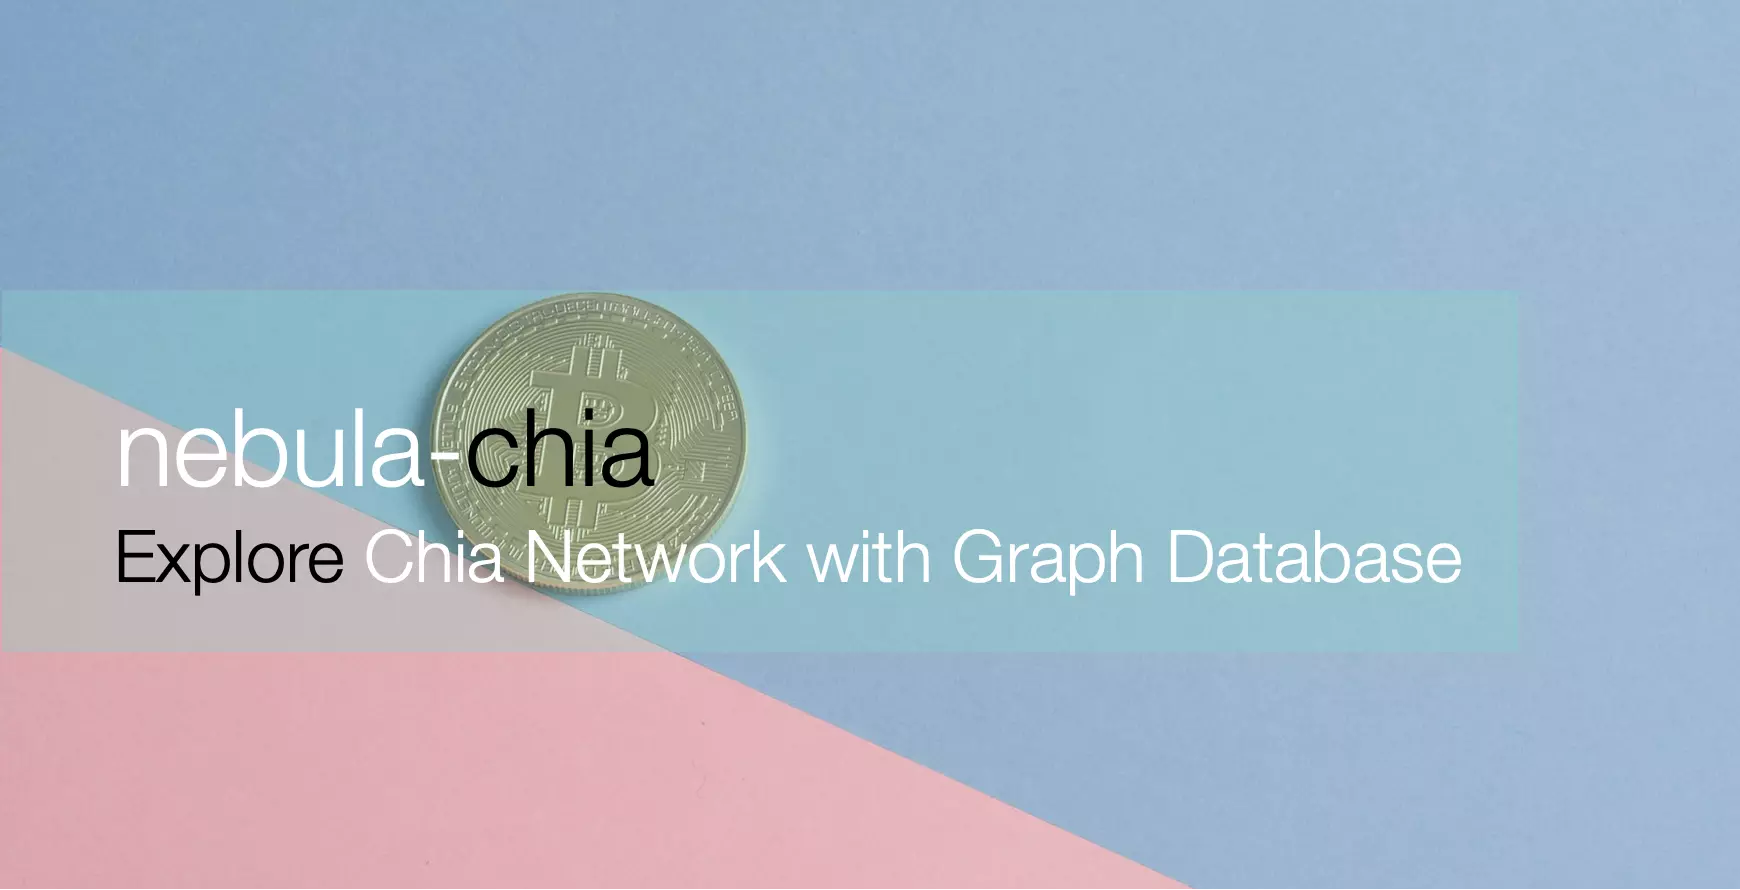 本文分析了 Chia Network 的全链数据，并做了将全链数据导入图数据库：Nebula Graph 之中的尝试，从而可视化地探索了 Chia 图中数据之间的关联关系。